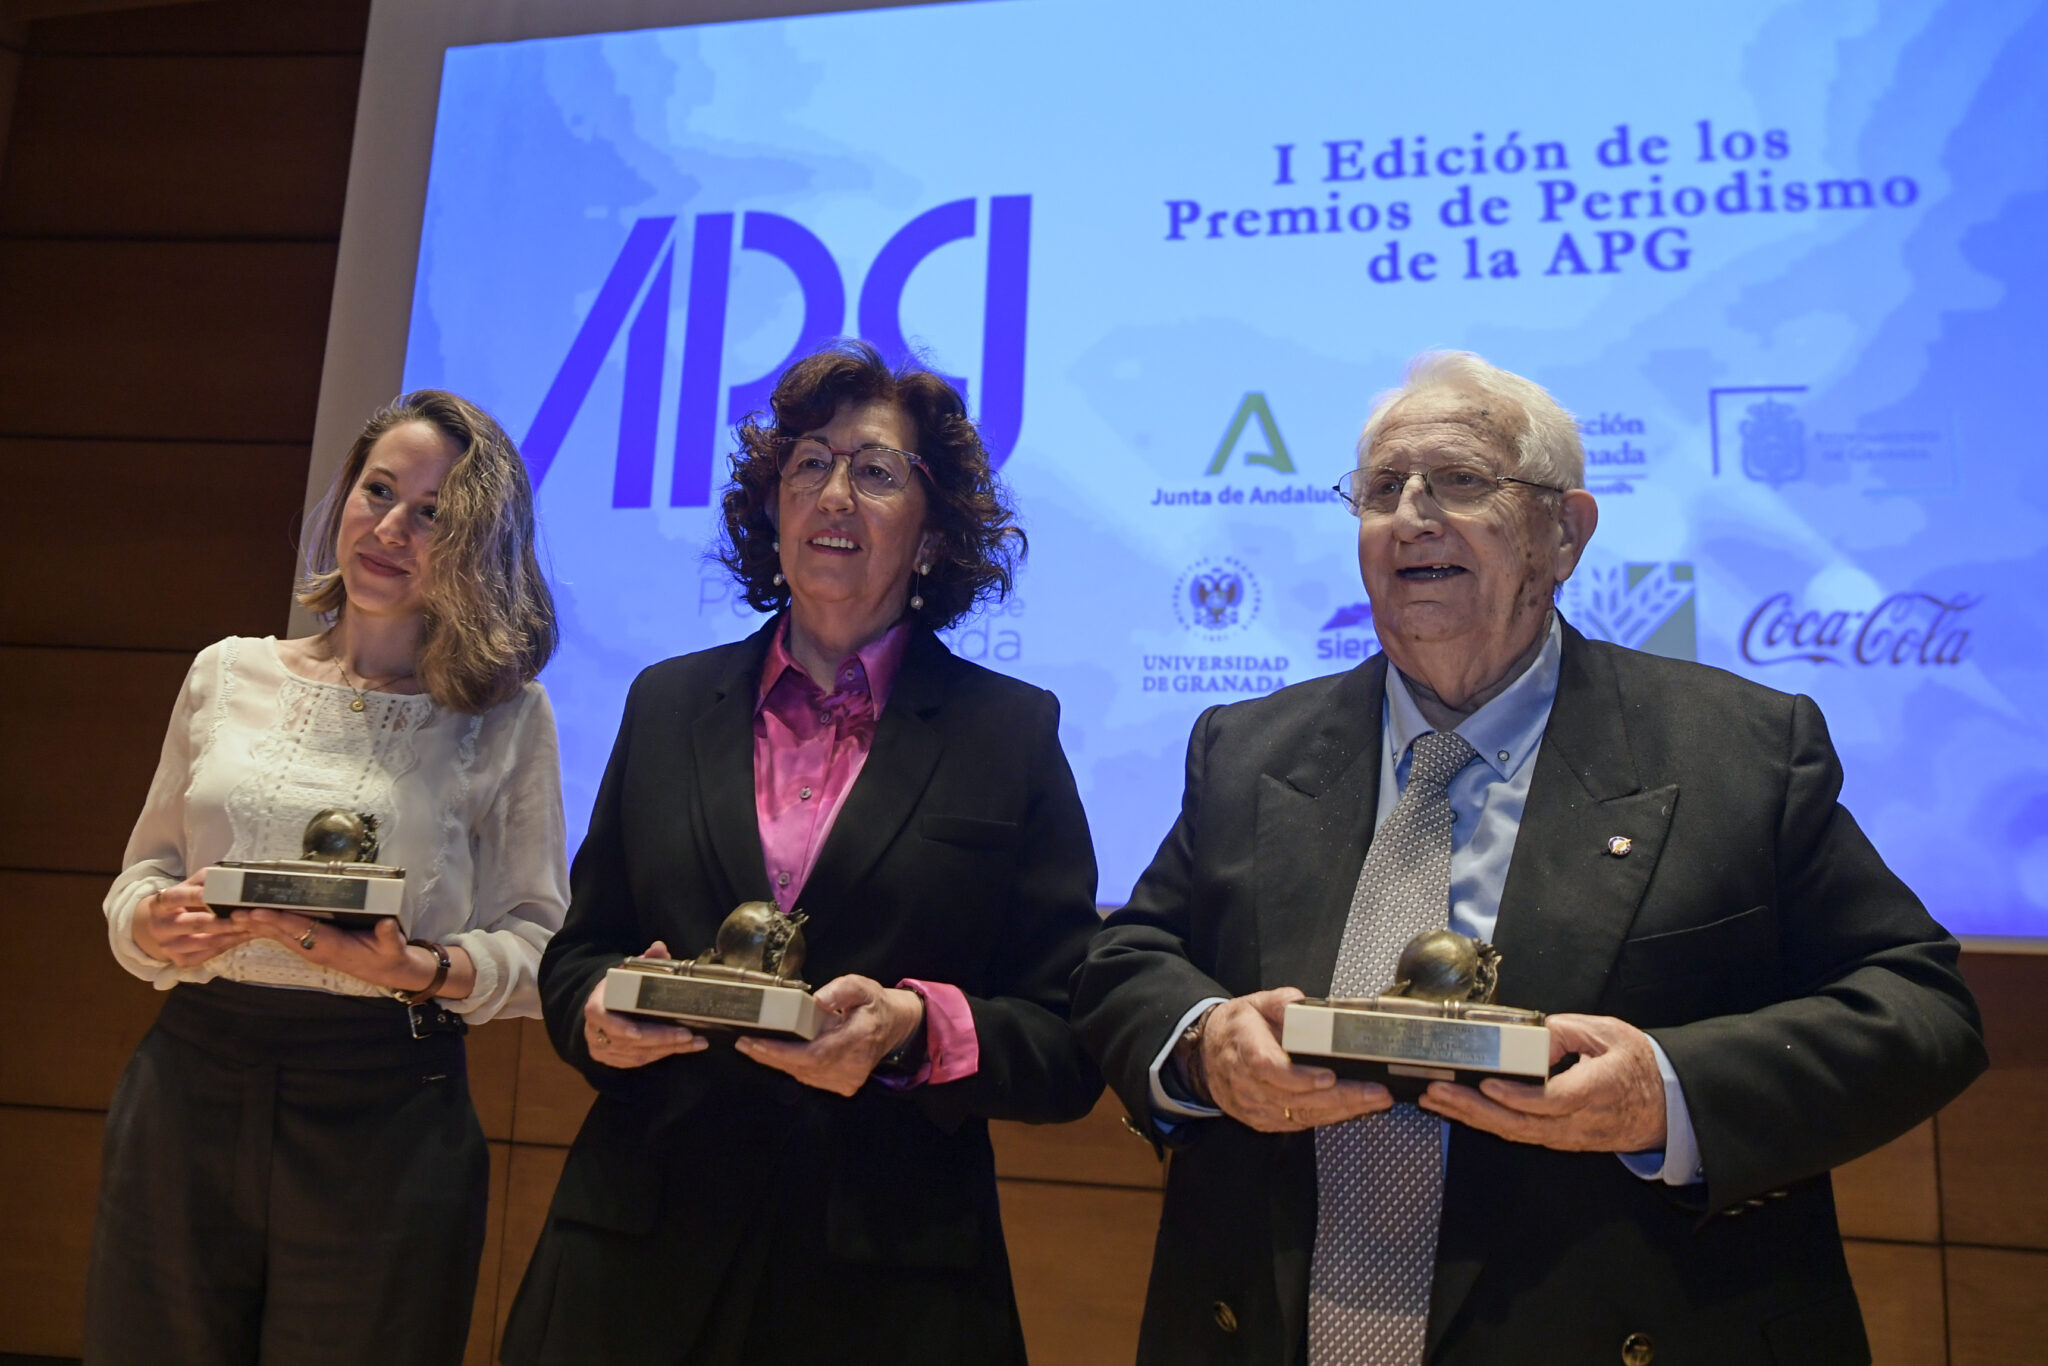 I edición de los Premios de Periodismo de la APG


Auditorio Caja Rural de Granada
Granada
Andalucia
España